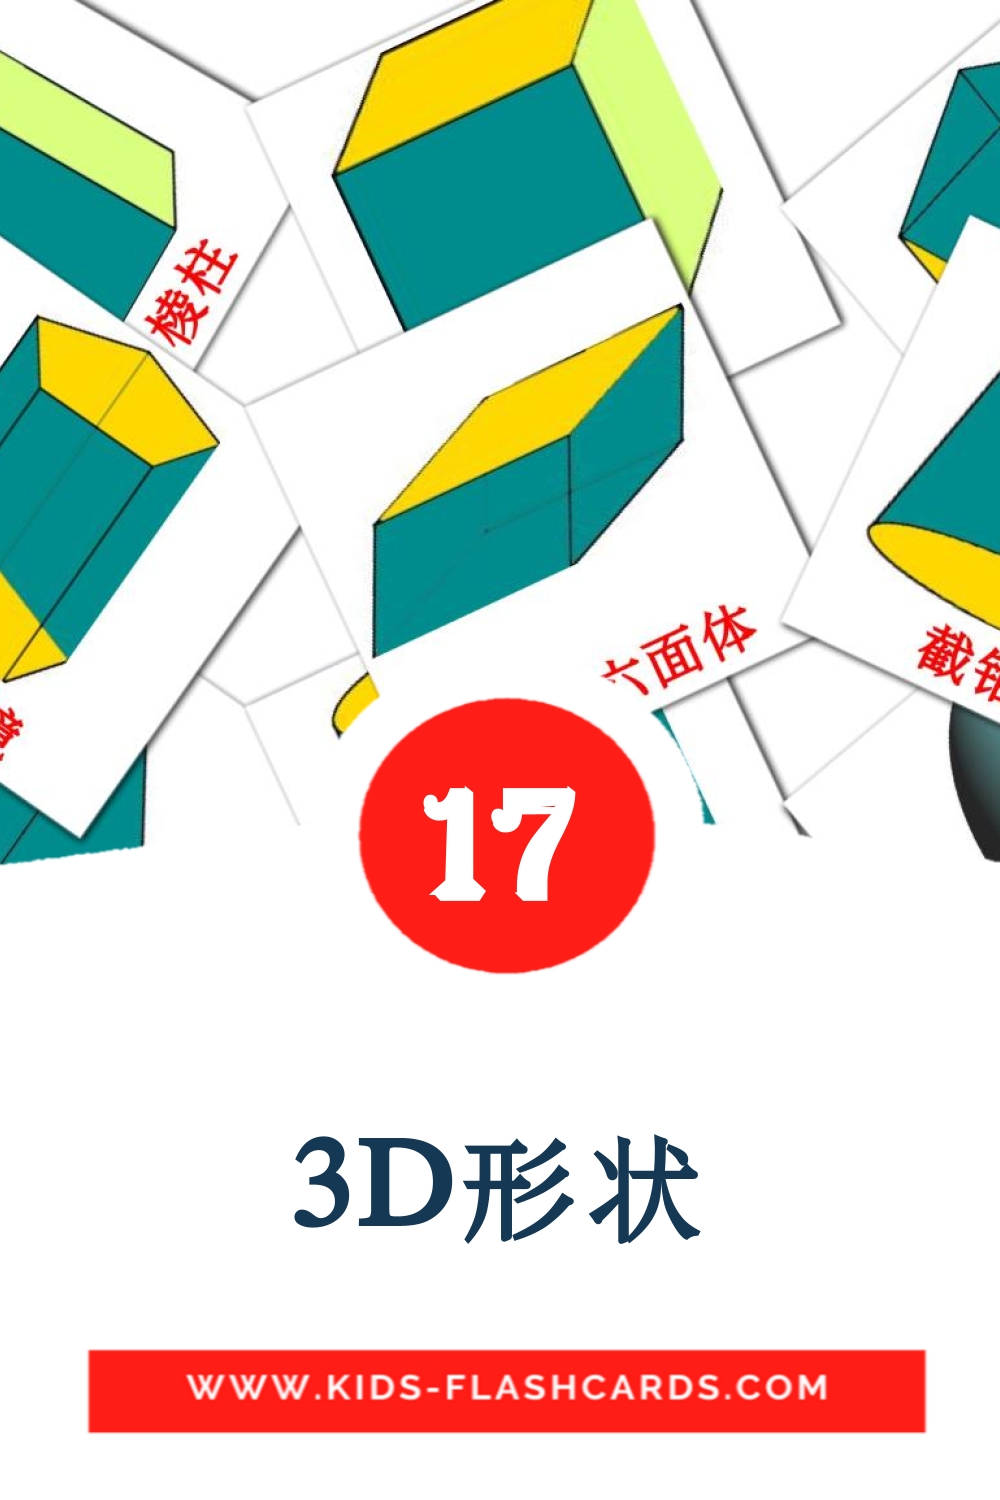 17 3D形状 Bildkarten für den Kindergarten auf Chinesisch(Vereinfacht)